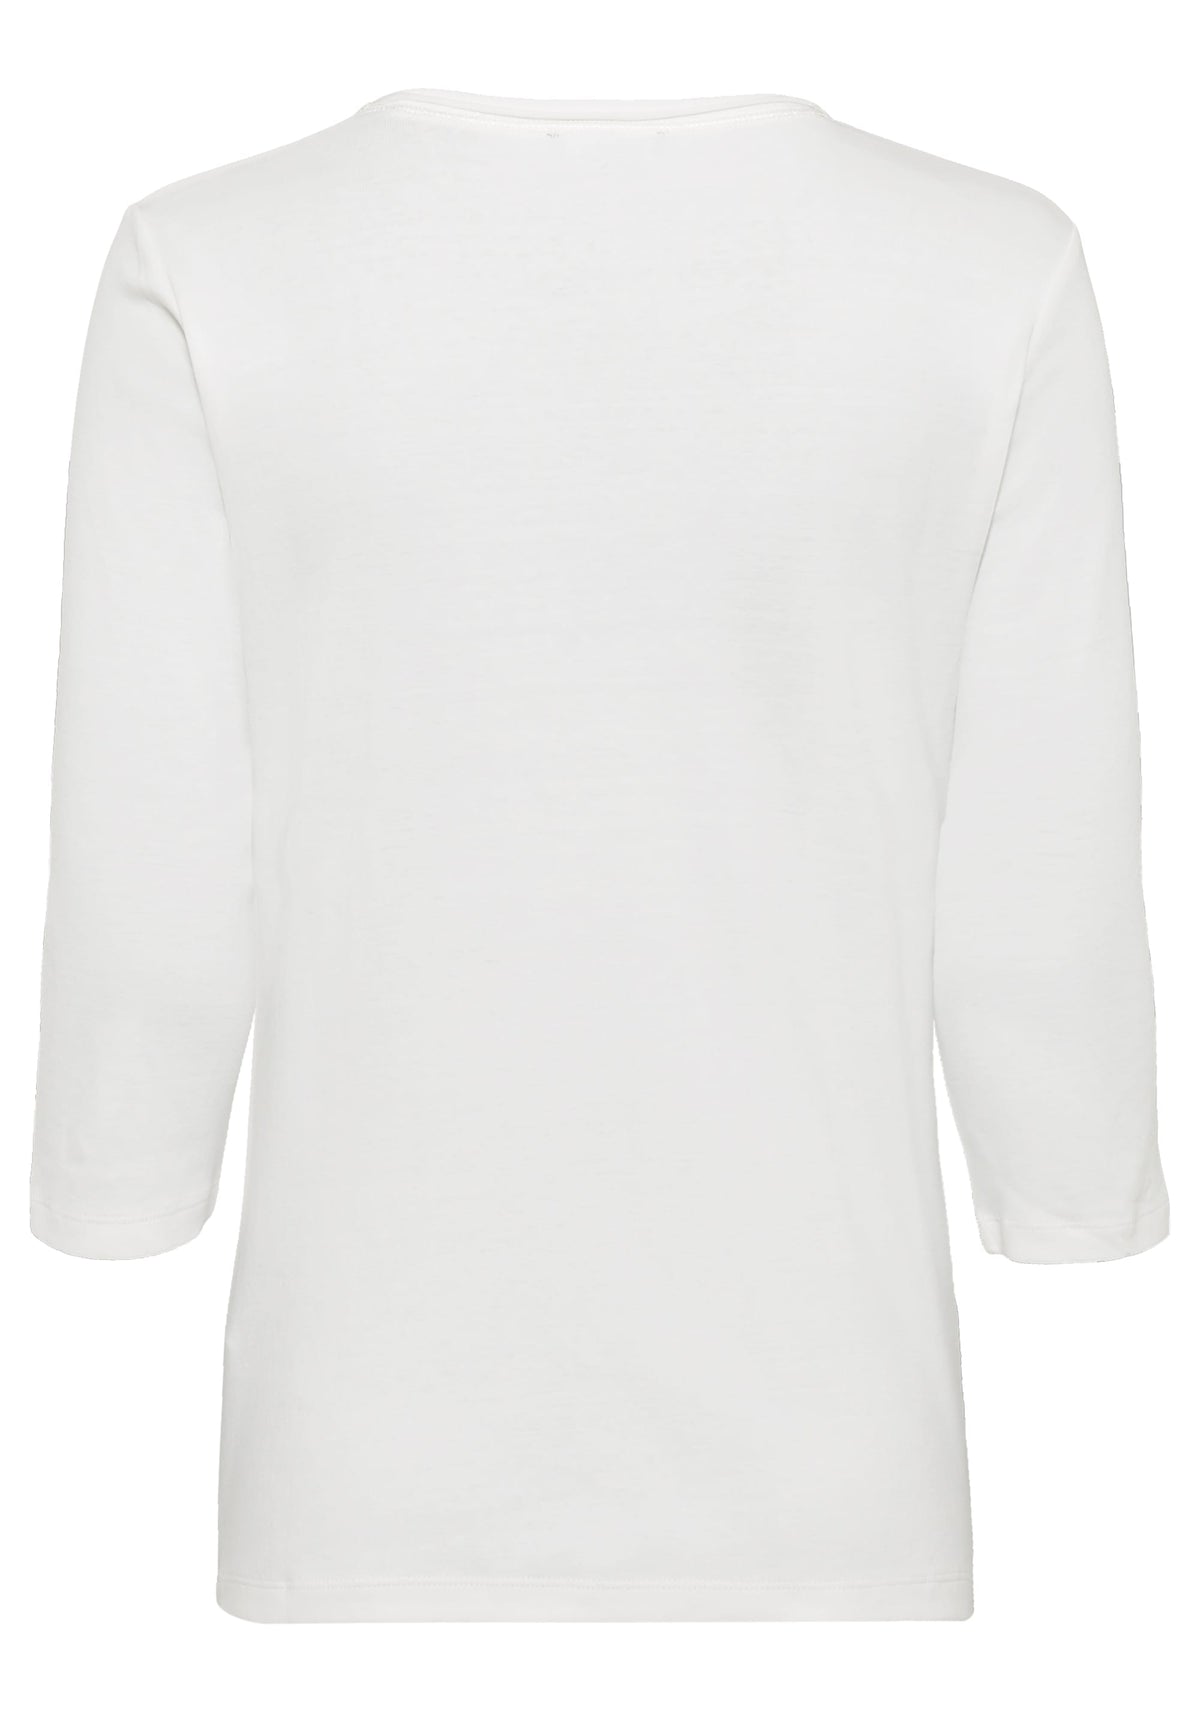 100% Cotton 3/4 Sleeve Foil Placement Print T-Shirt